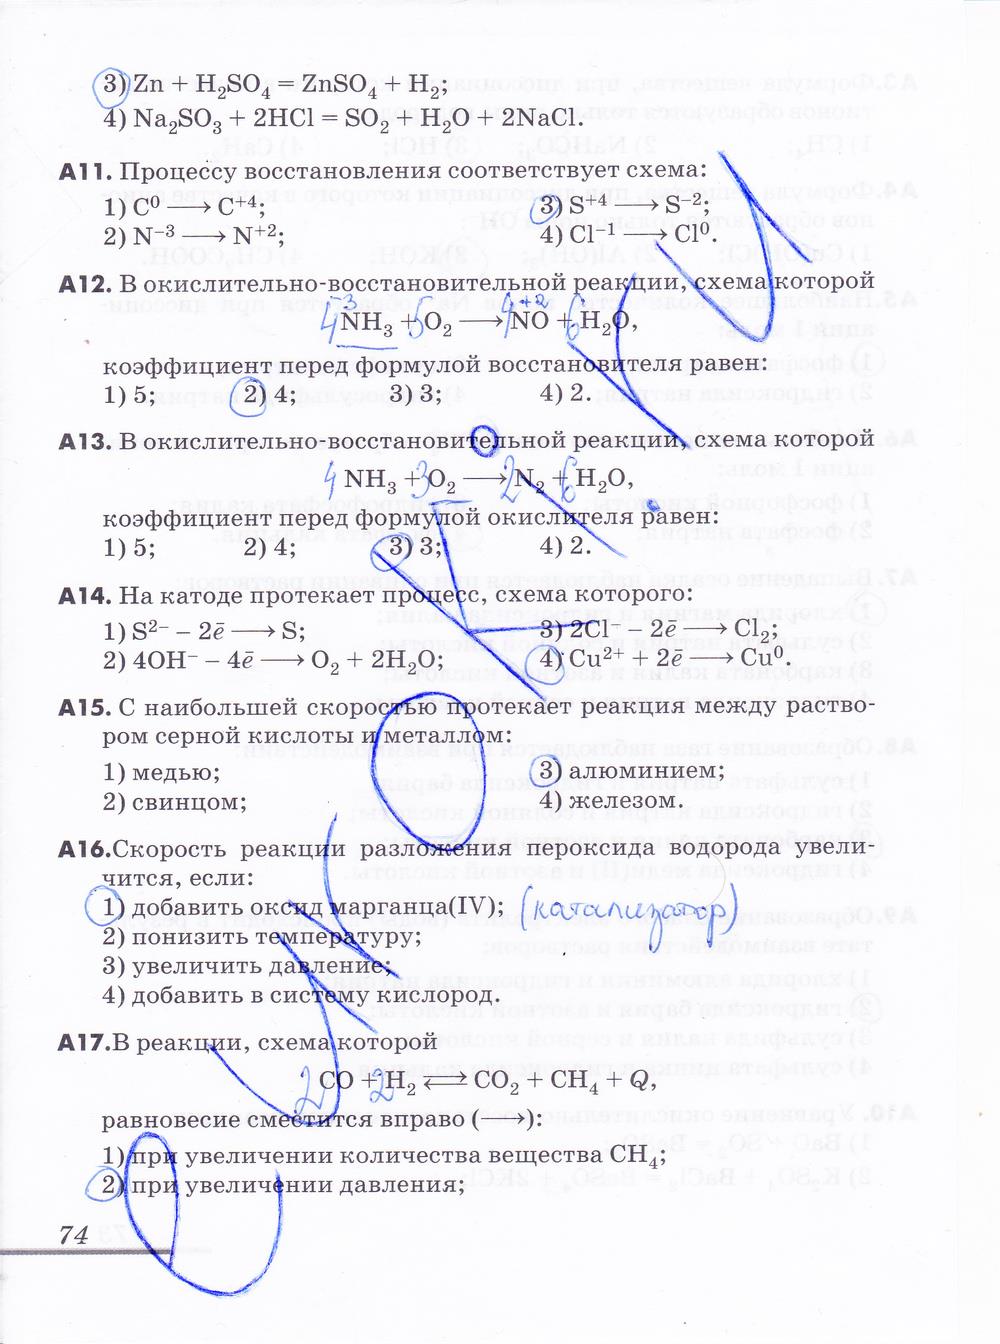 гдз 9 класс рабочая тетрадь страница 74 химия Еремин, Дроздов